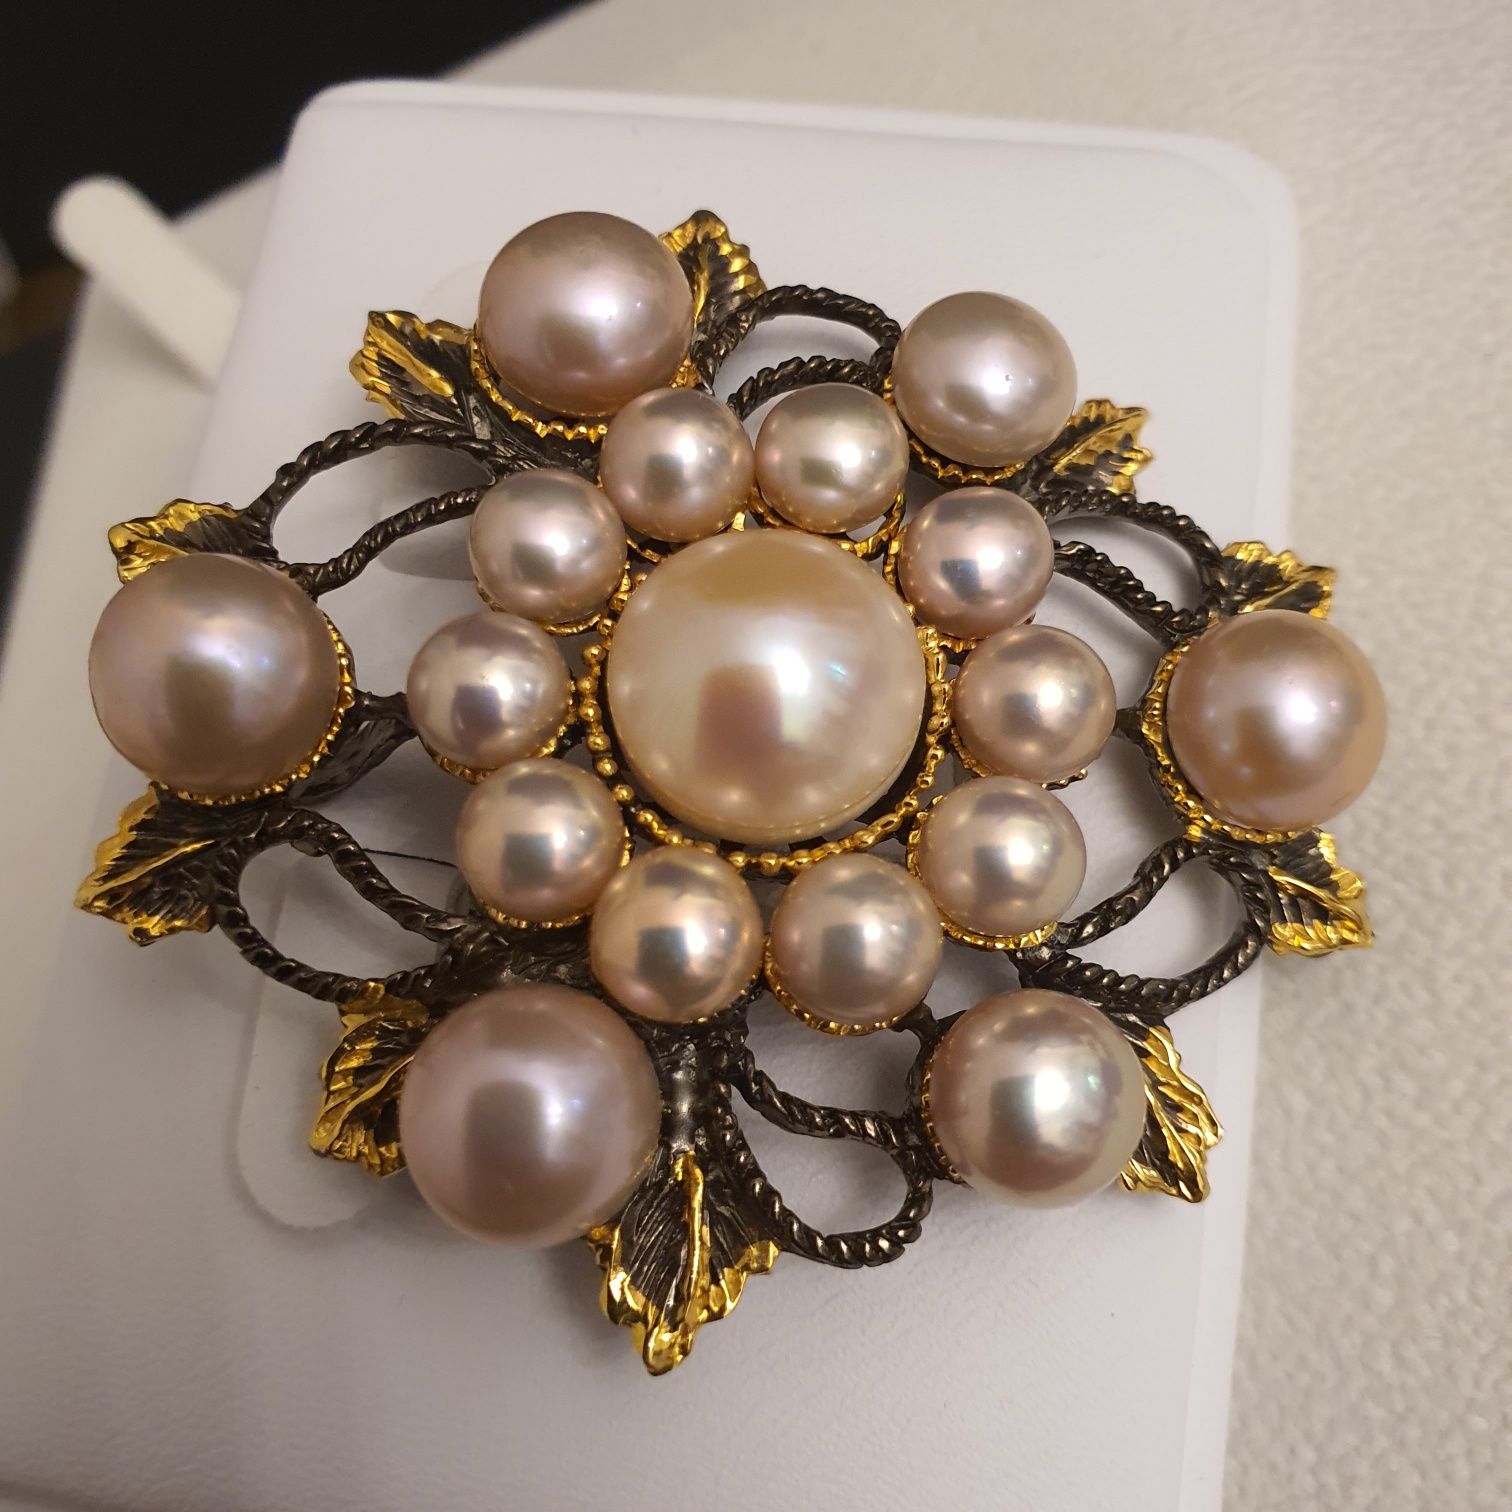 impozanta brosa pandantiv argint 925 cu perle naturale